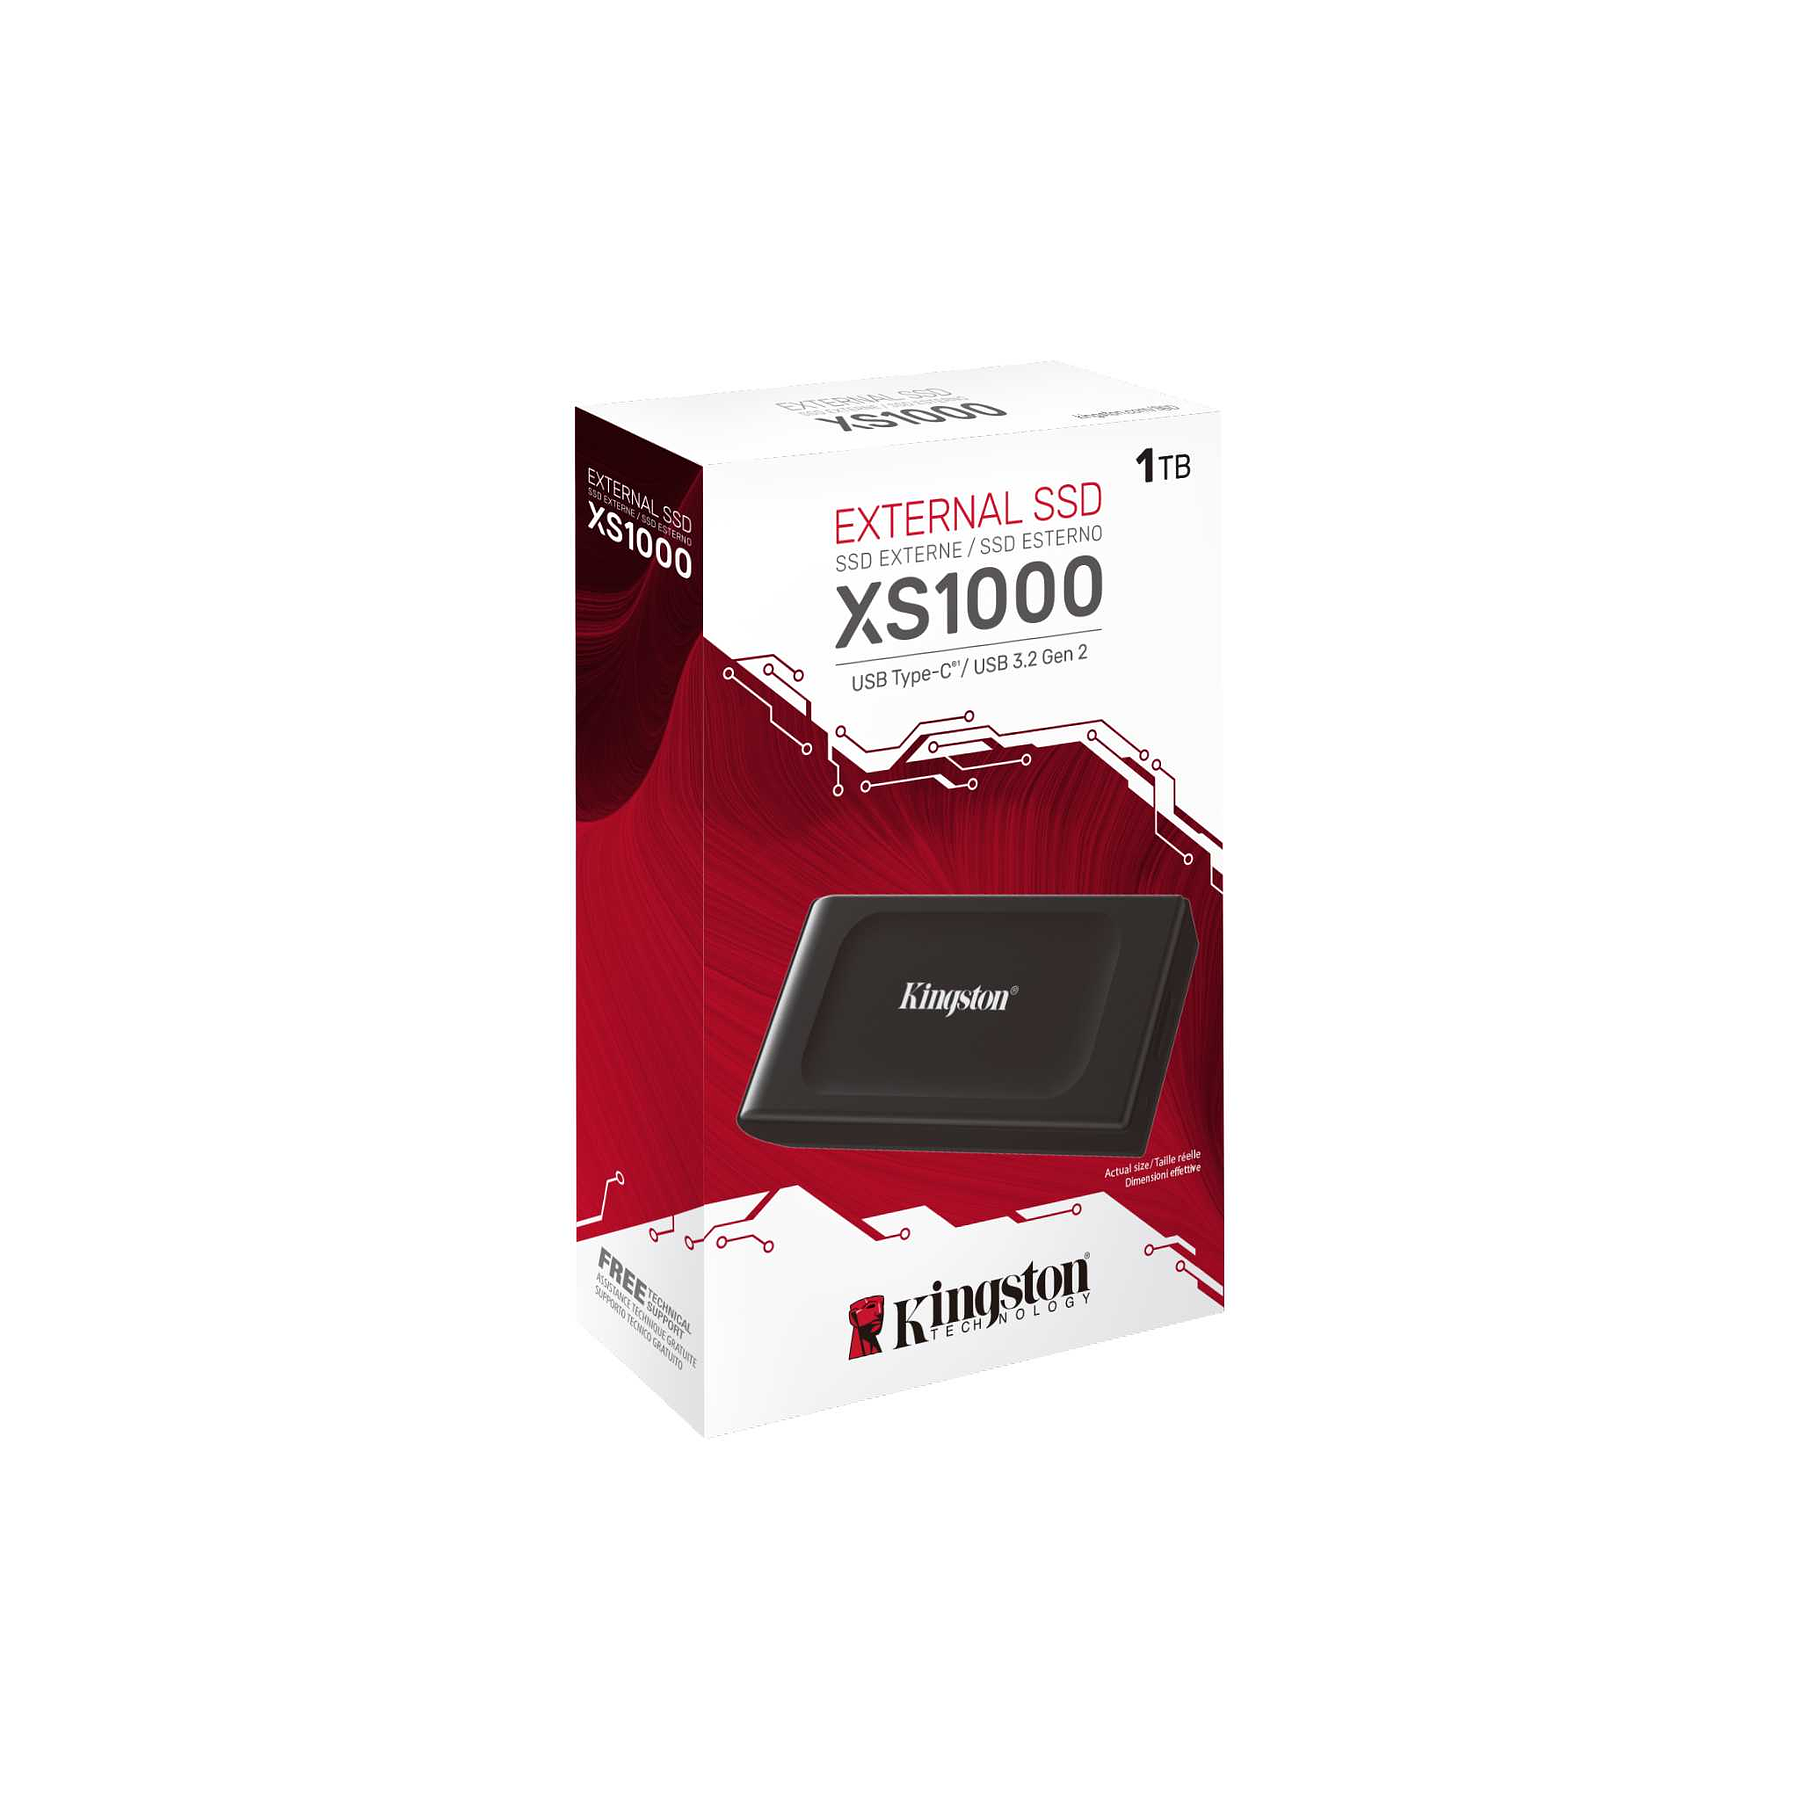 Kingston XS1000 Disco SDD de 1TB